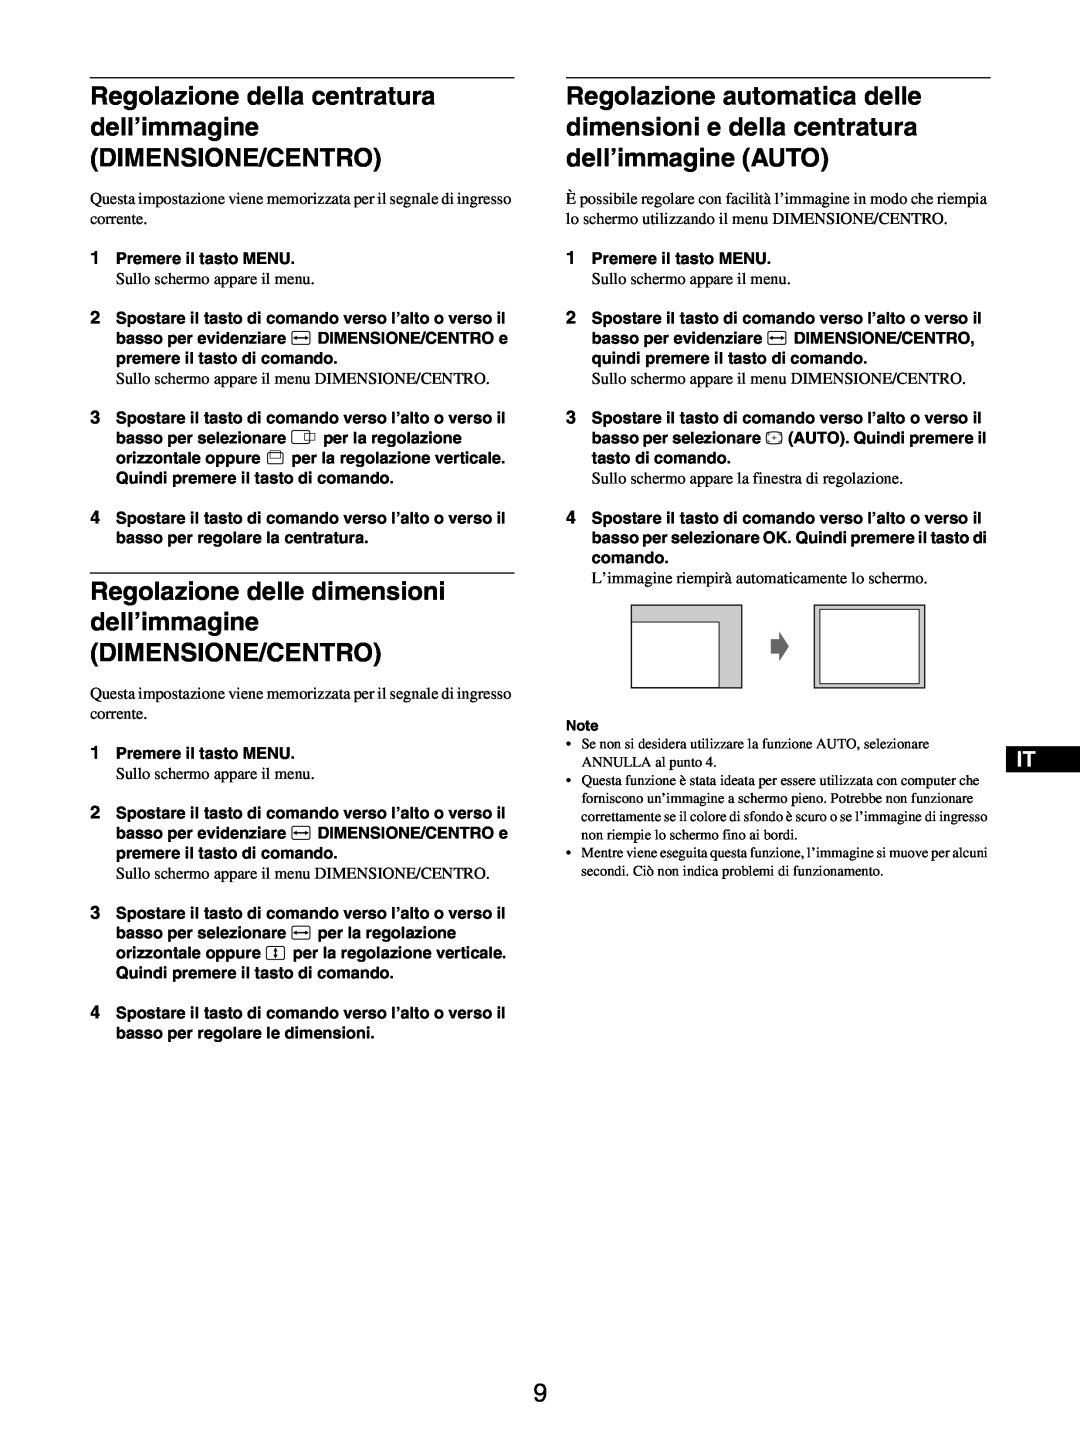 Sony GDM-5510 operating instructions Regolazione della centratura dell’immagine DIMENSIONE/CENTRO, ANNULLA al punto 